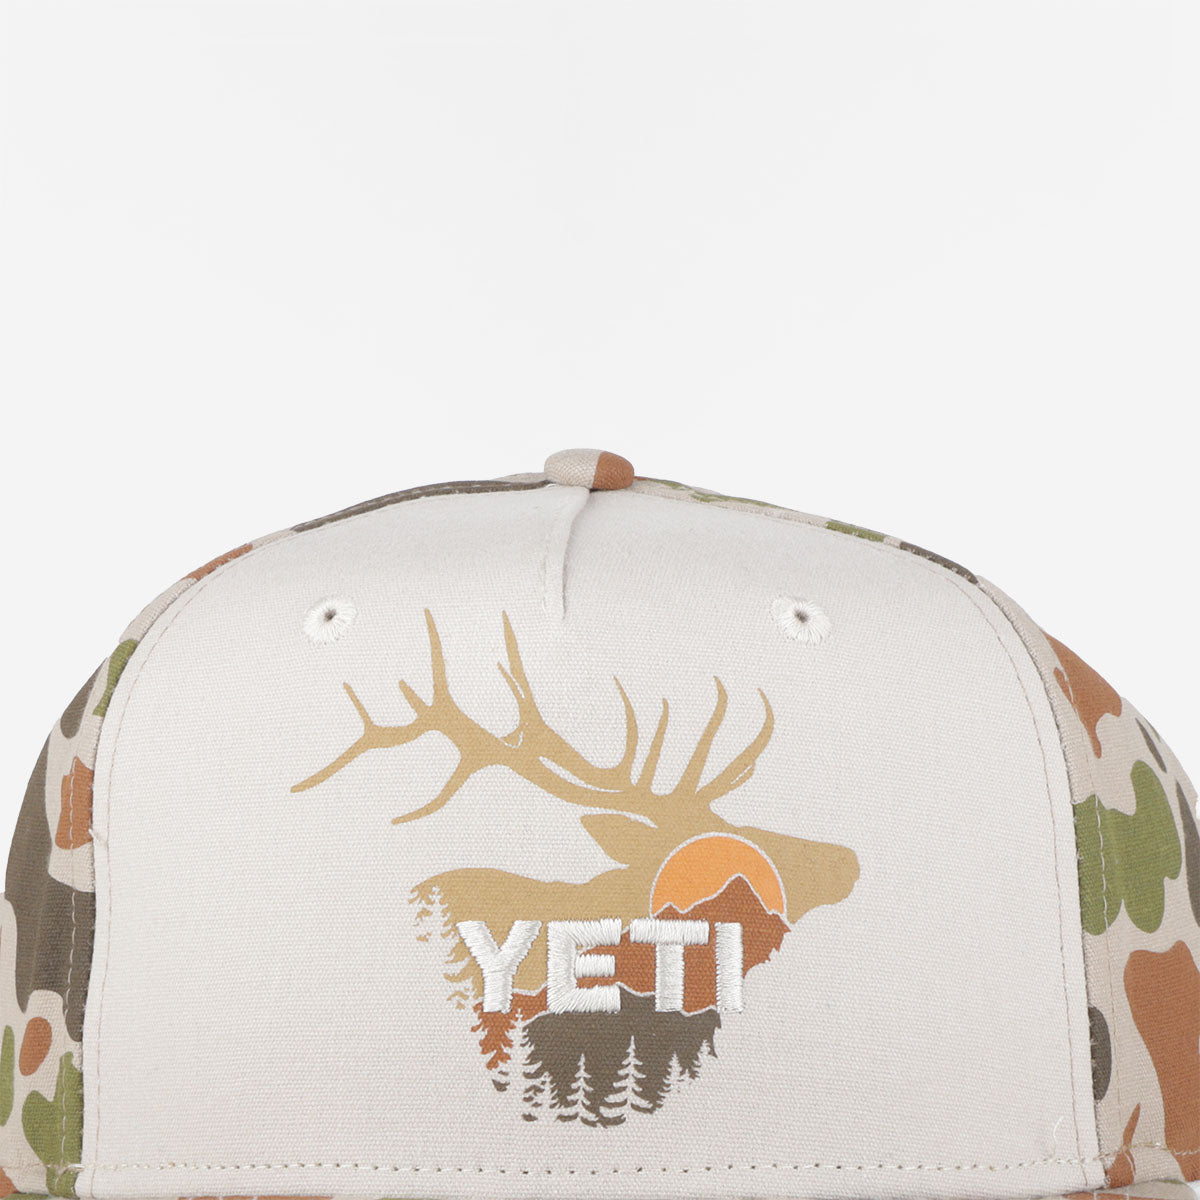 YETI Sunrise Elk Flat Brim Hat, Tan Brown Camo, Detail Shot 2